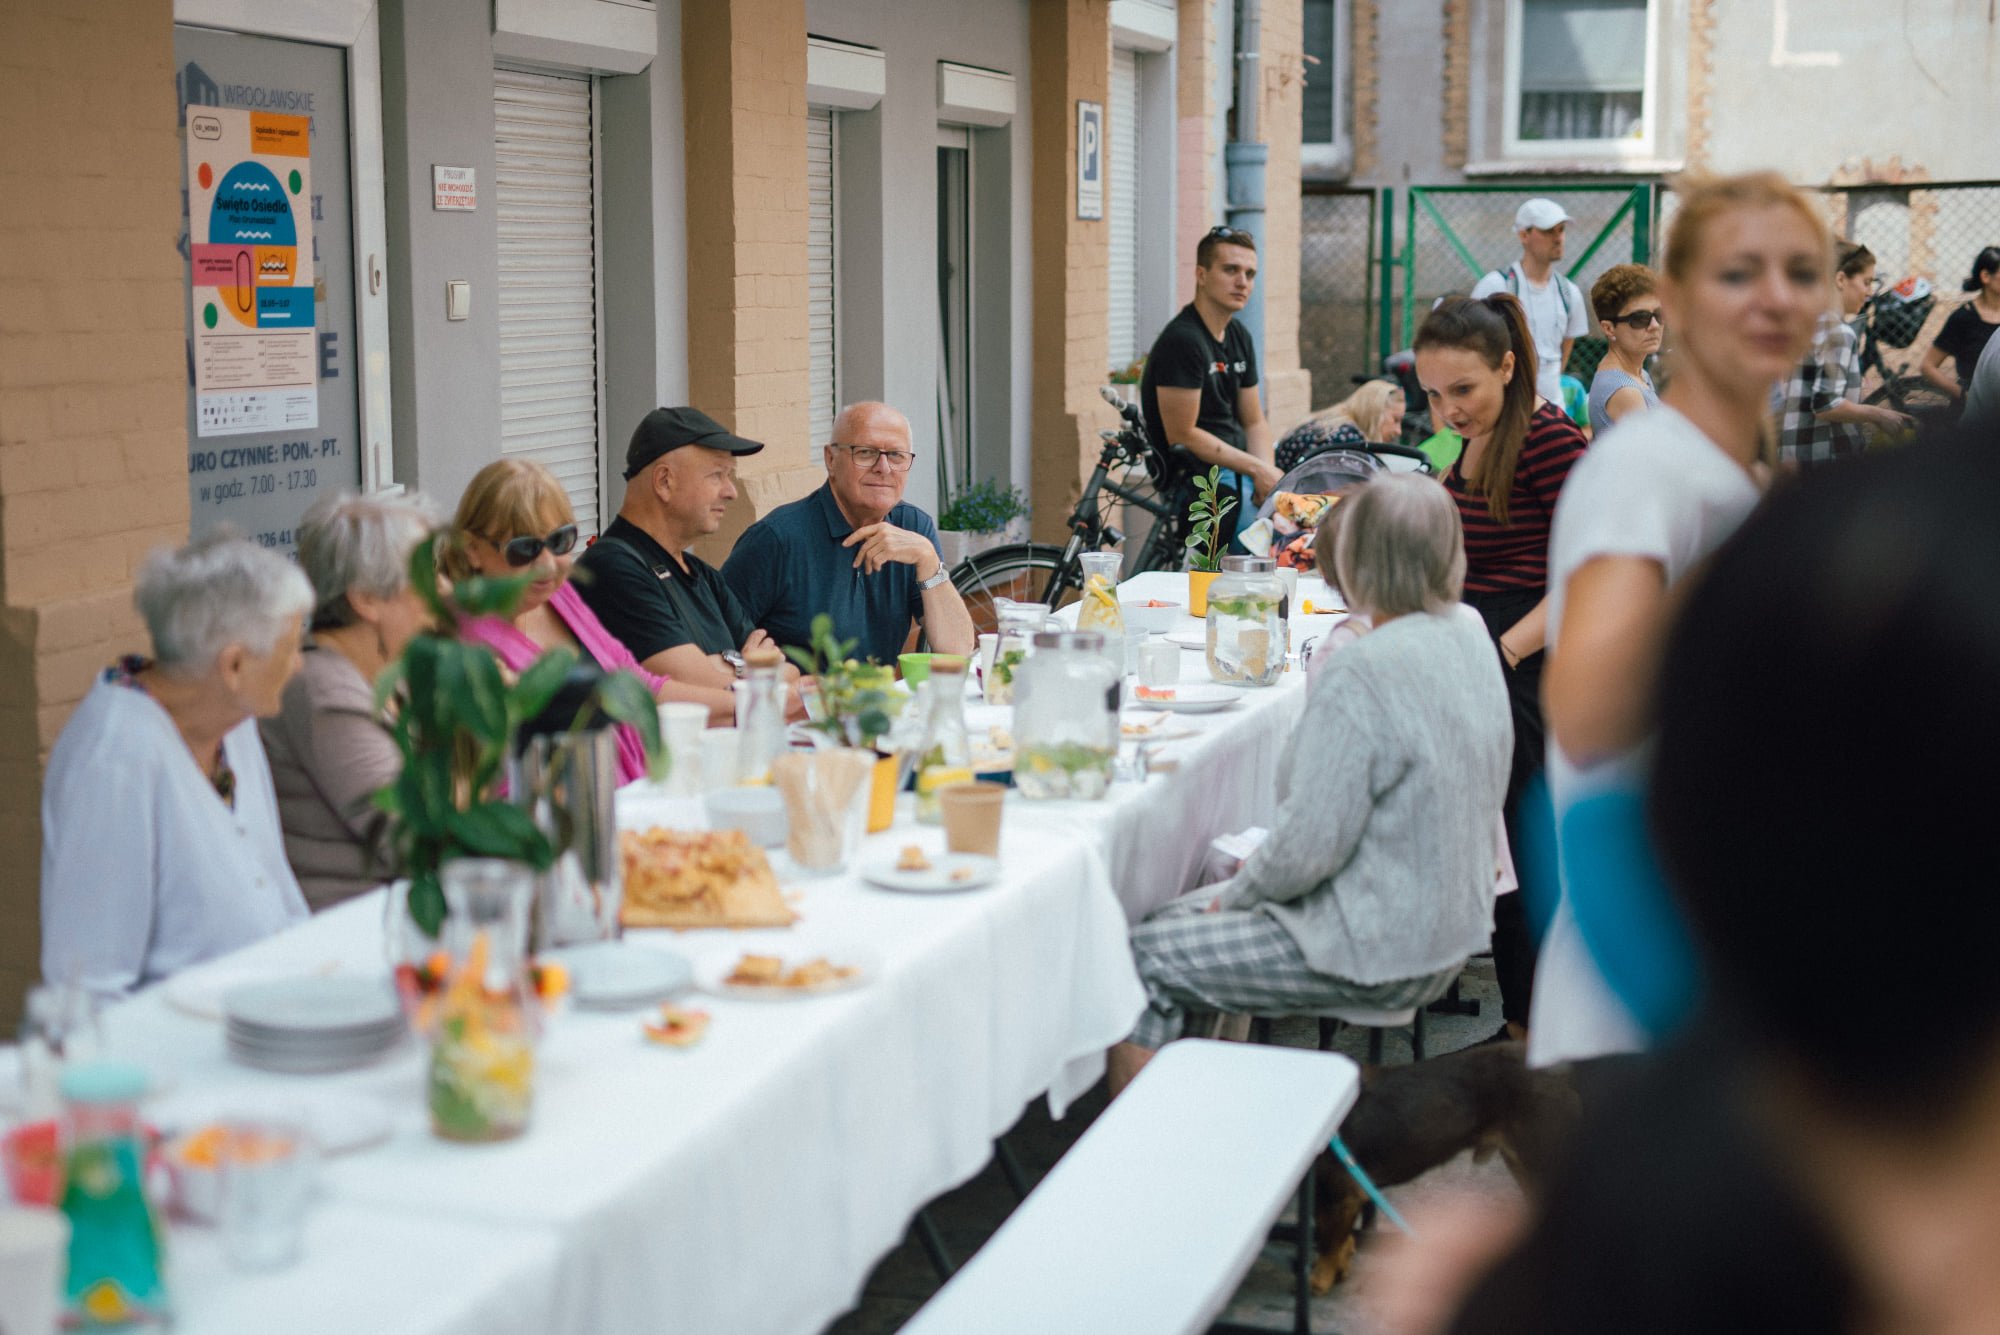 Przed budynkiem Centrum Aktywności Lokalnej Plac Grunwaldzki OD NOWA stoi długi stół, przykryty białym obrusem. Przy stole siedzi duża grupa seniorów i seniorek. Rozmawiają ze sobą. Na stole jest dużo przekąsek oraz napojów.